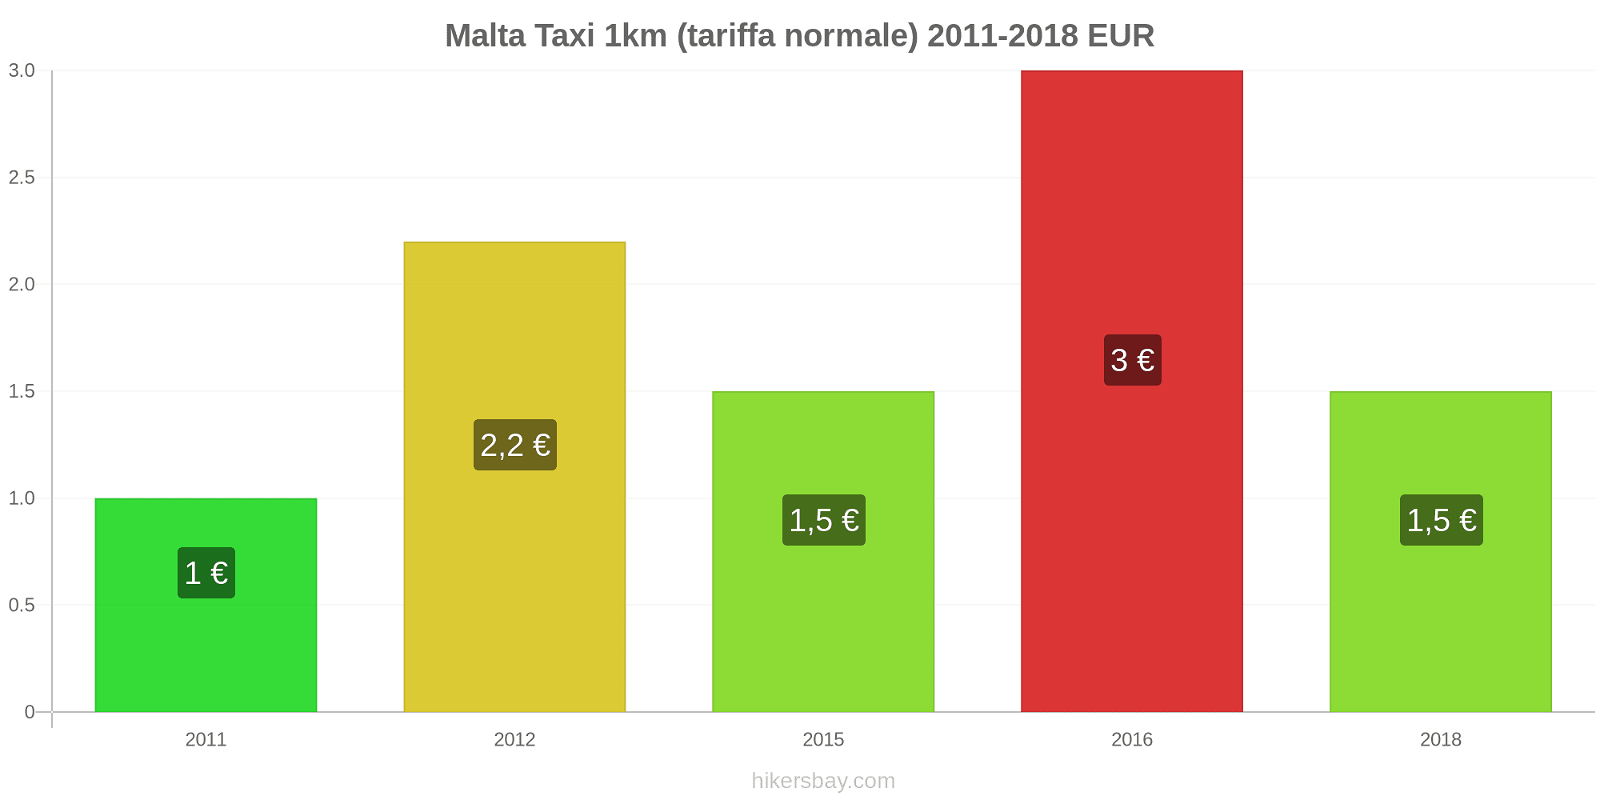 Malta cambi di prezzo Taxi 1km (tariffa normale) hikersbay.com